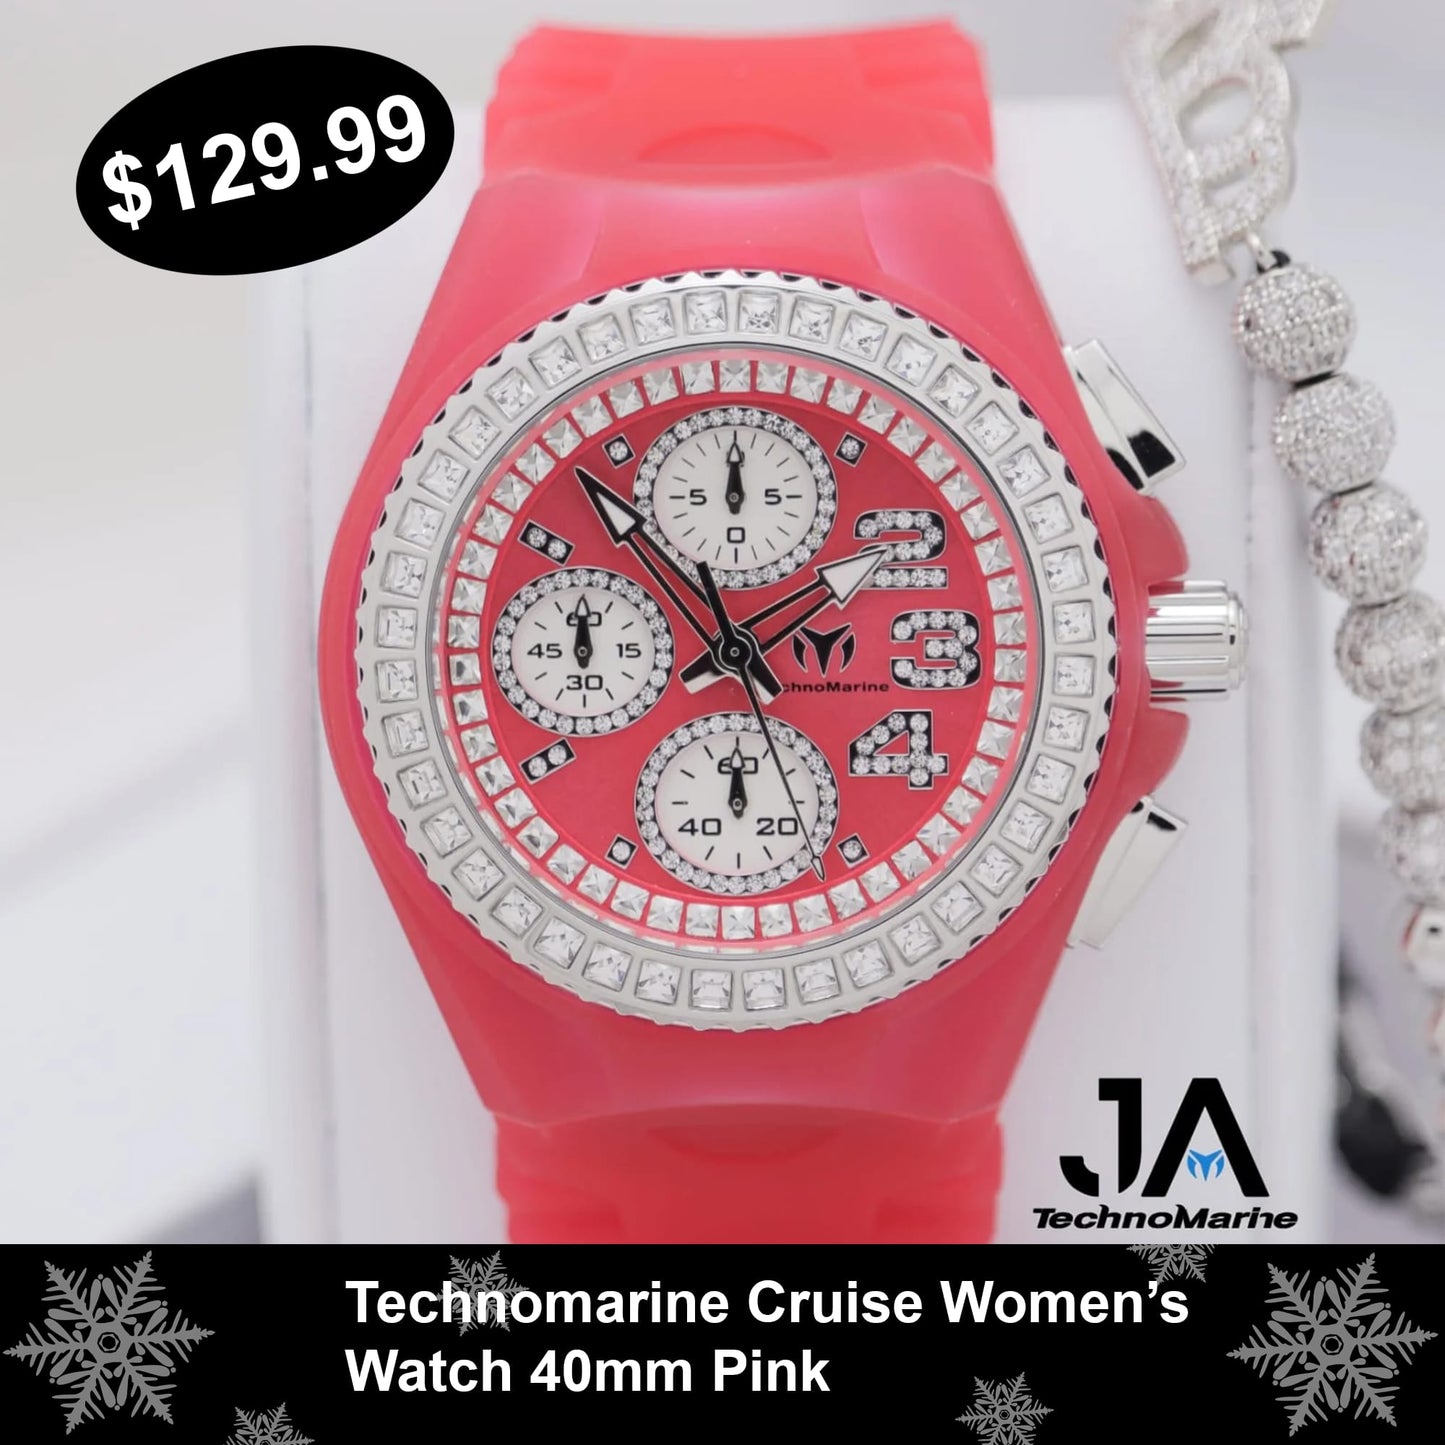 TechnoMarine Cruise Women's Watch - 40mm, Pink